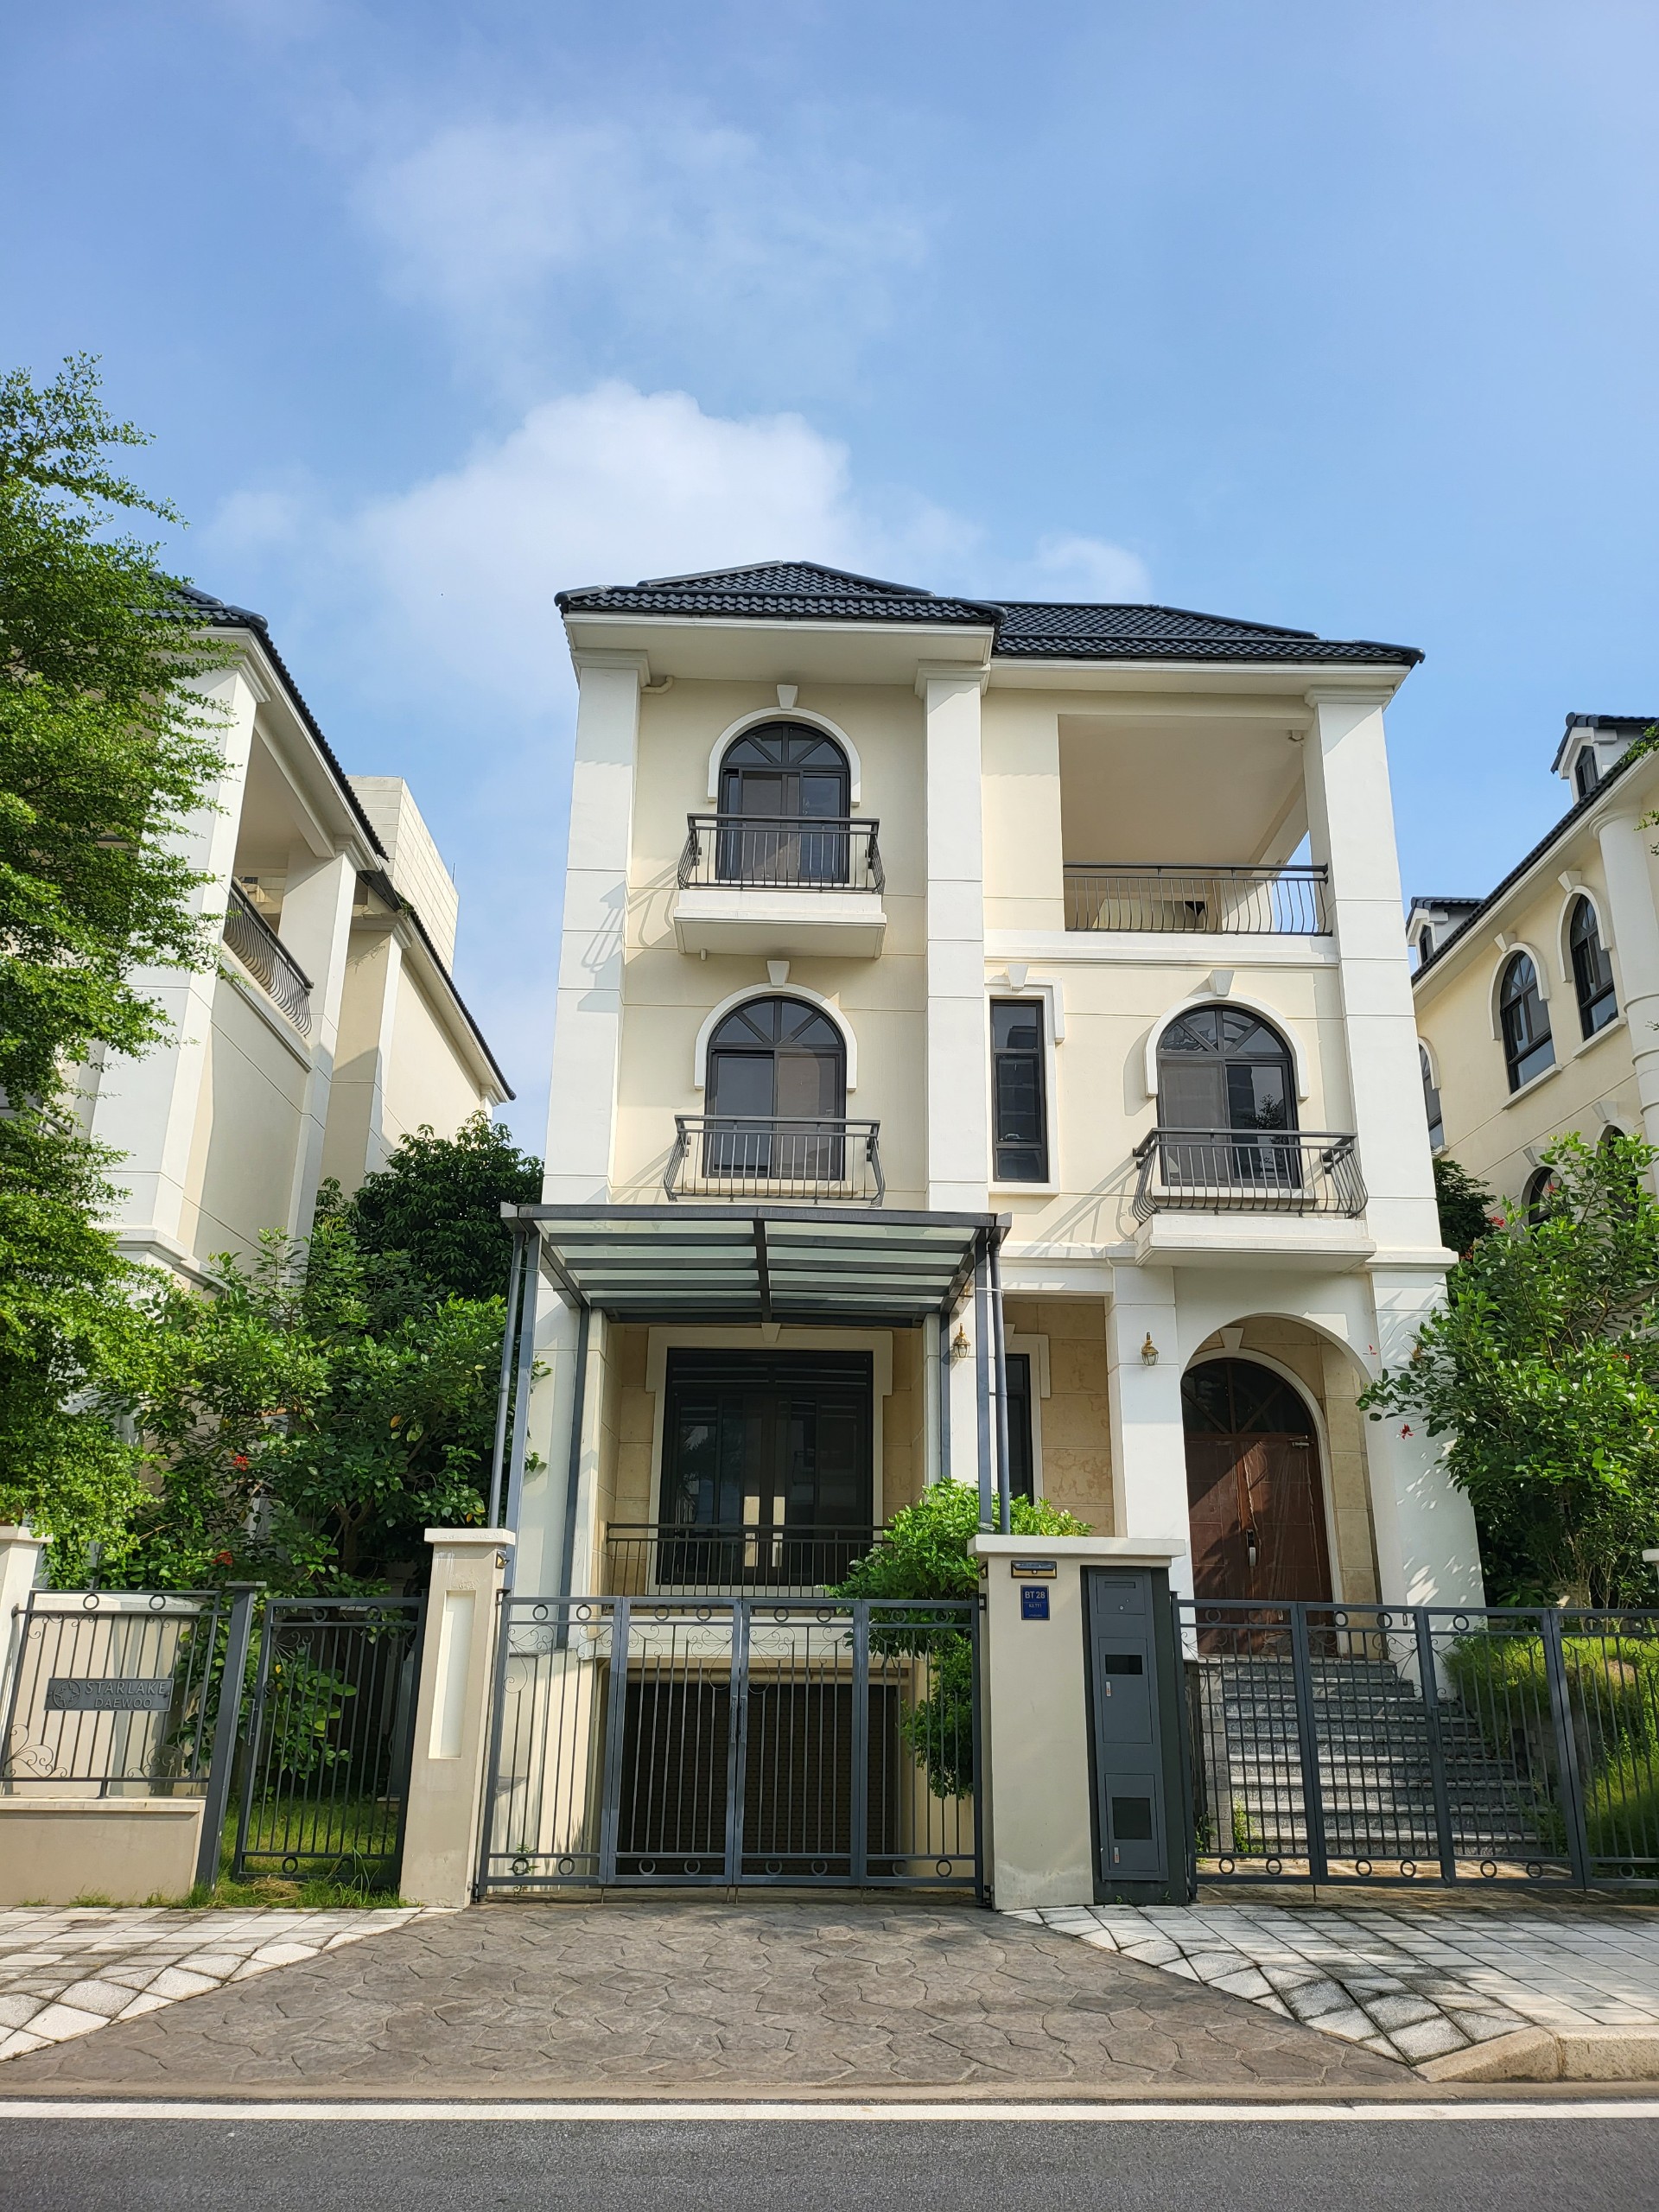 For sale: A detached villa K3 in Starlake - 286sqm - Price: 135 billion VND